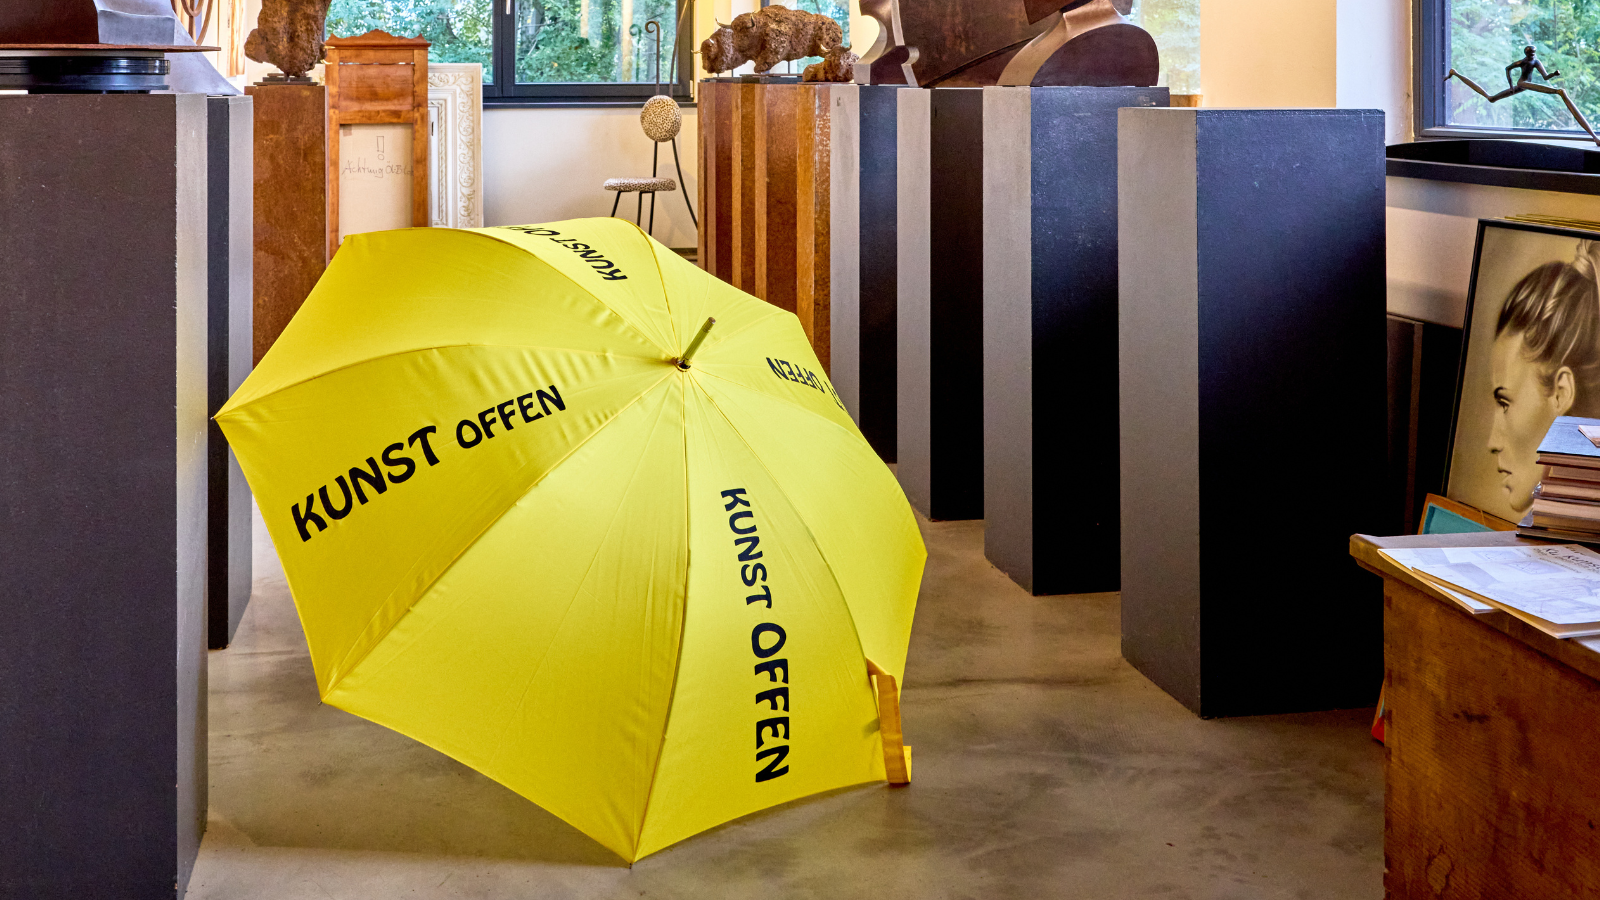 Gelber Schirm für KunstOffen © Oliver Borchert